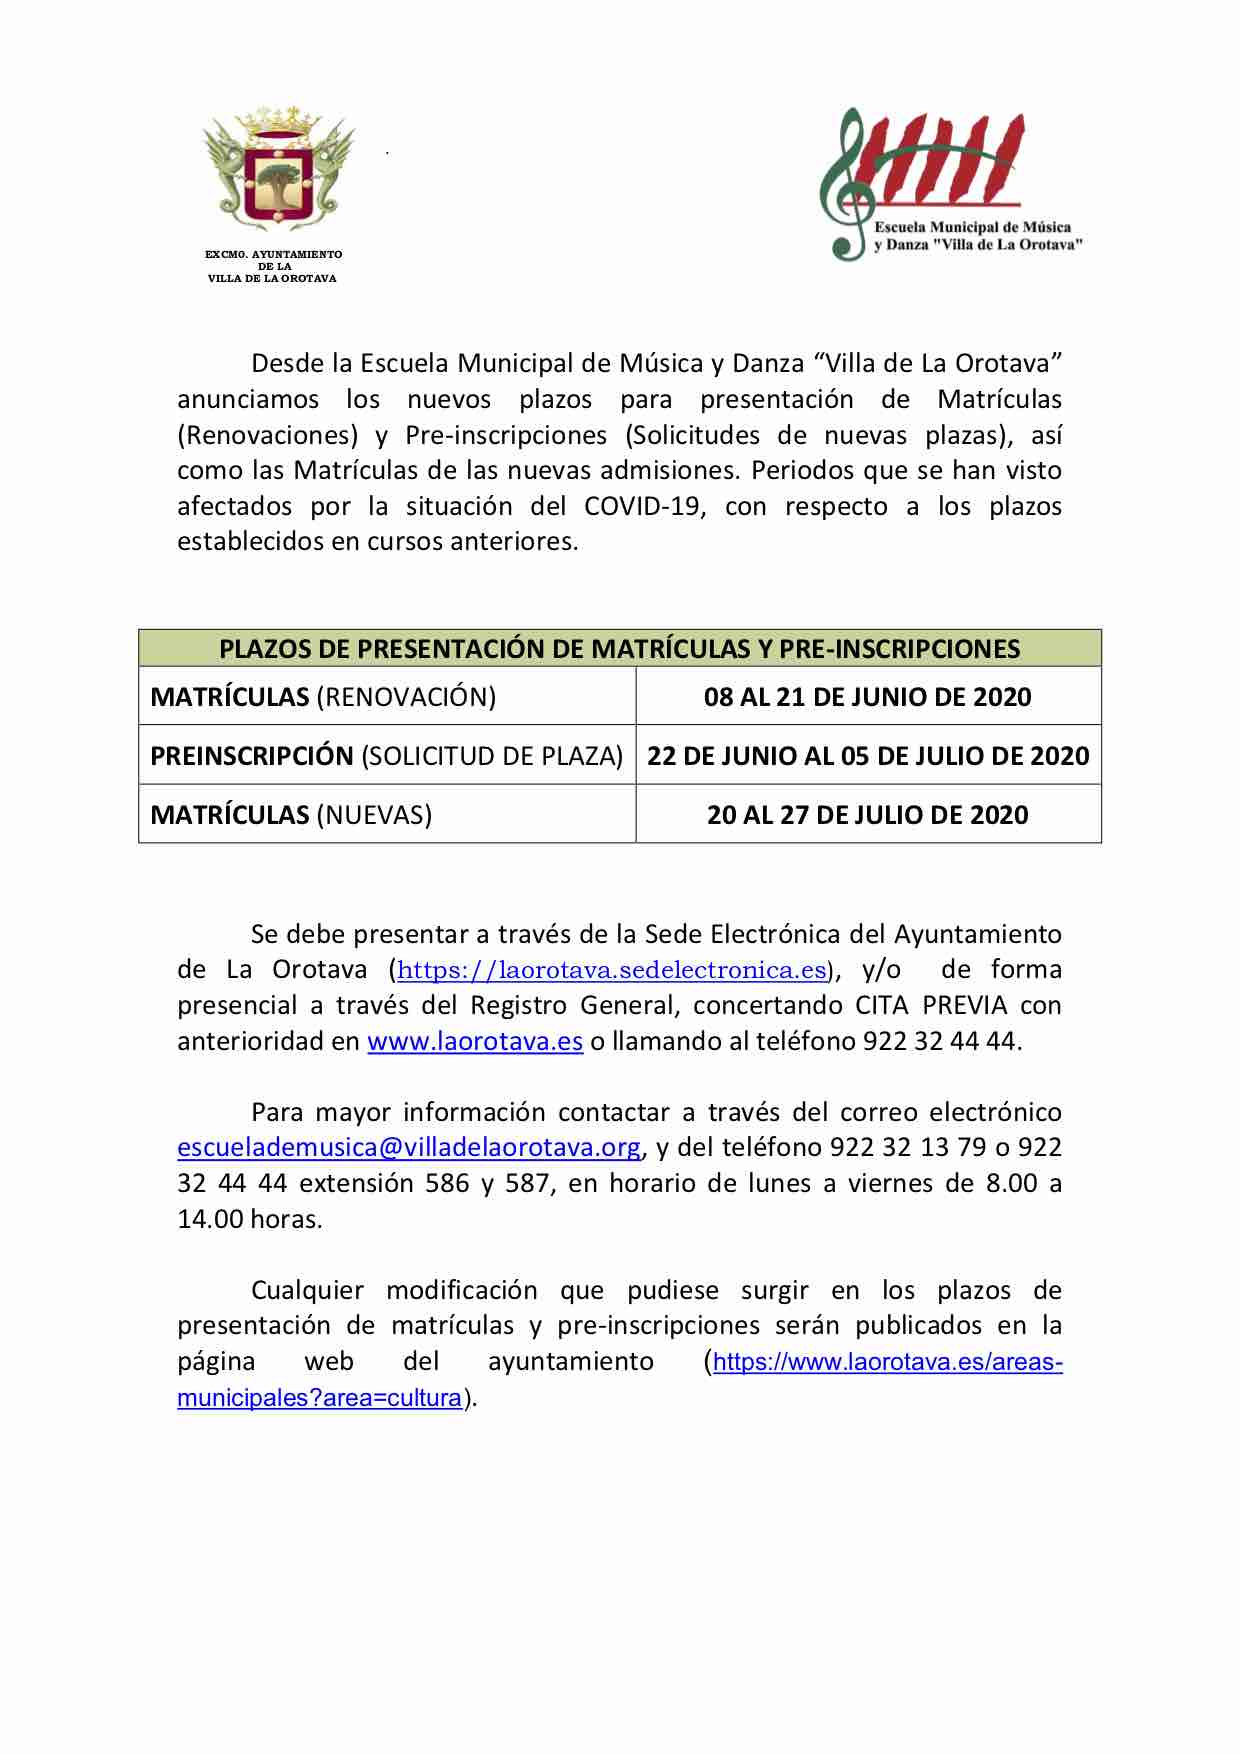 La Escuela Municipal de Música y Danza Villa de La Orotava establece los nuevos plazos de matrículas y preinscripciones